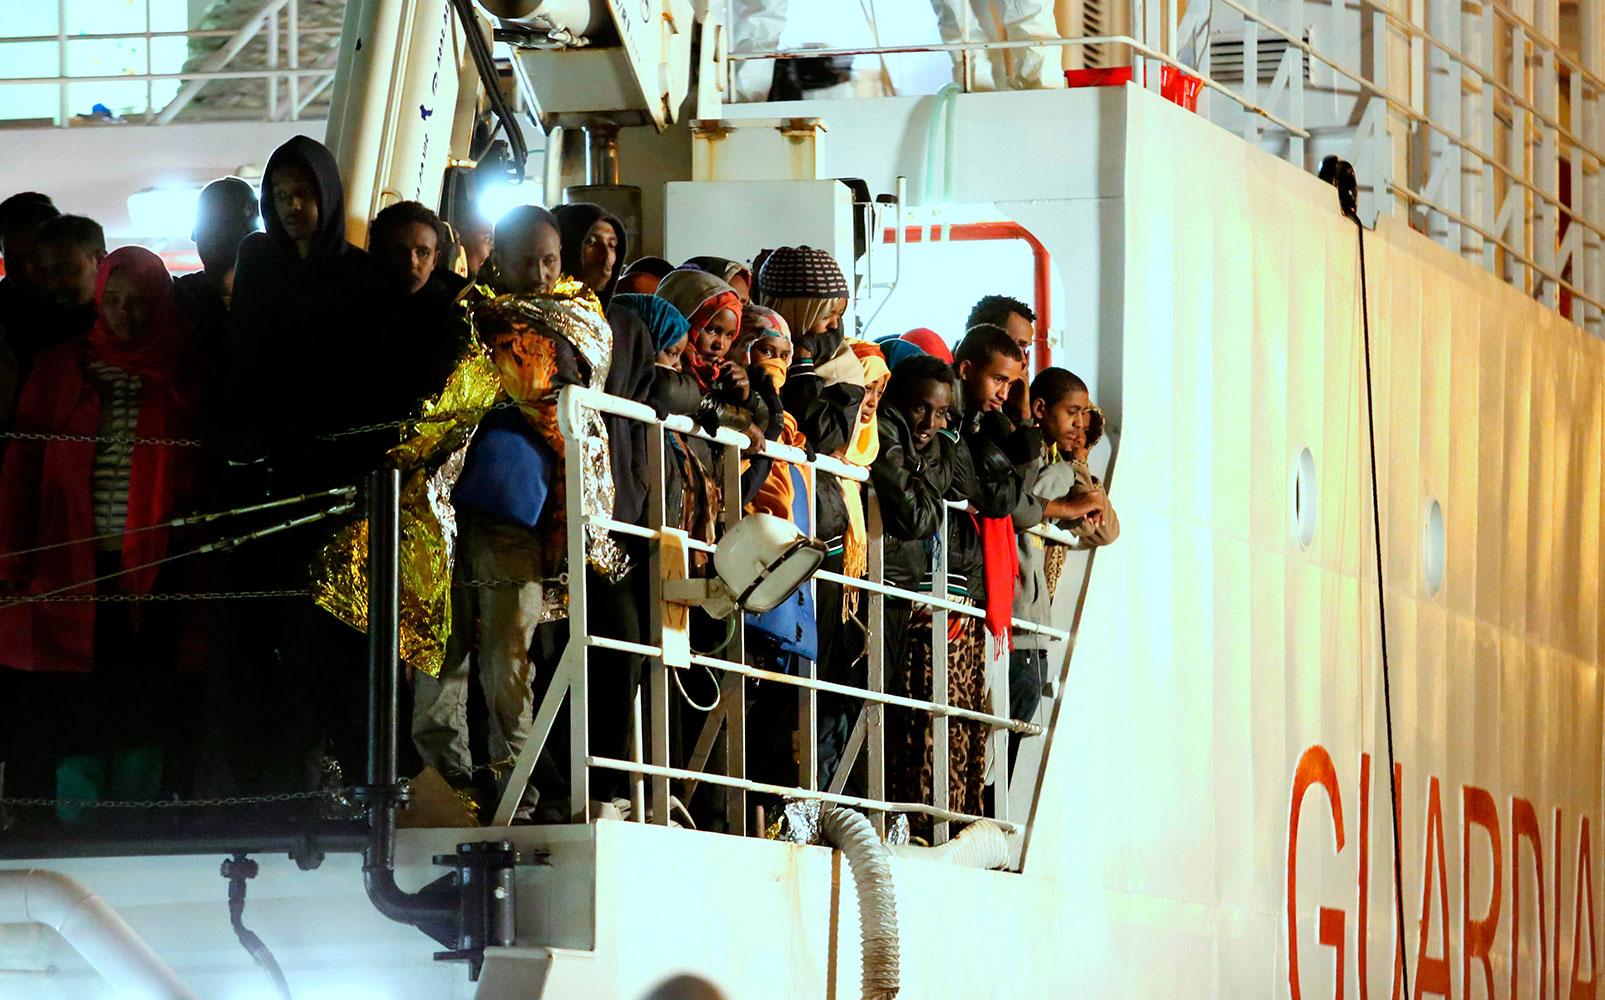 De här människorna har räddats från Medelhavet. Det är dock oklart om de var med på olycksfartyget där 400 dog.